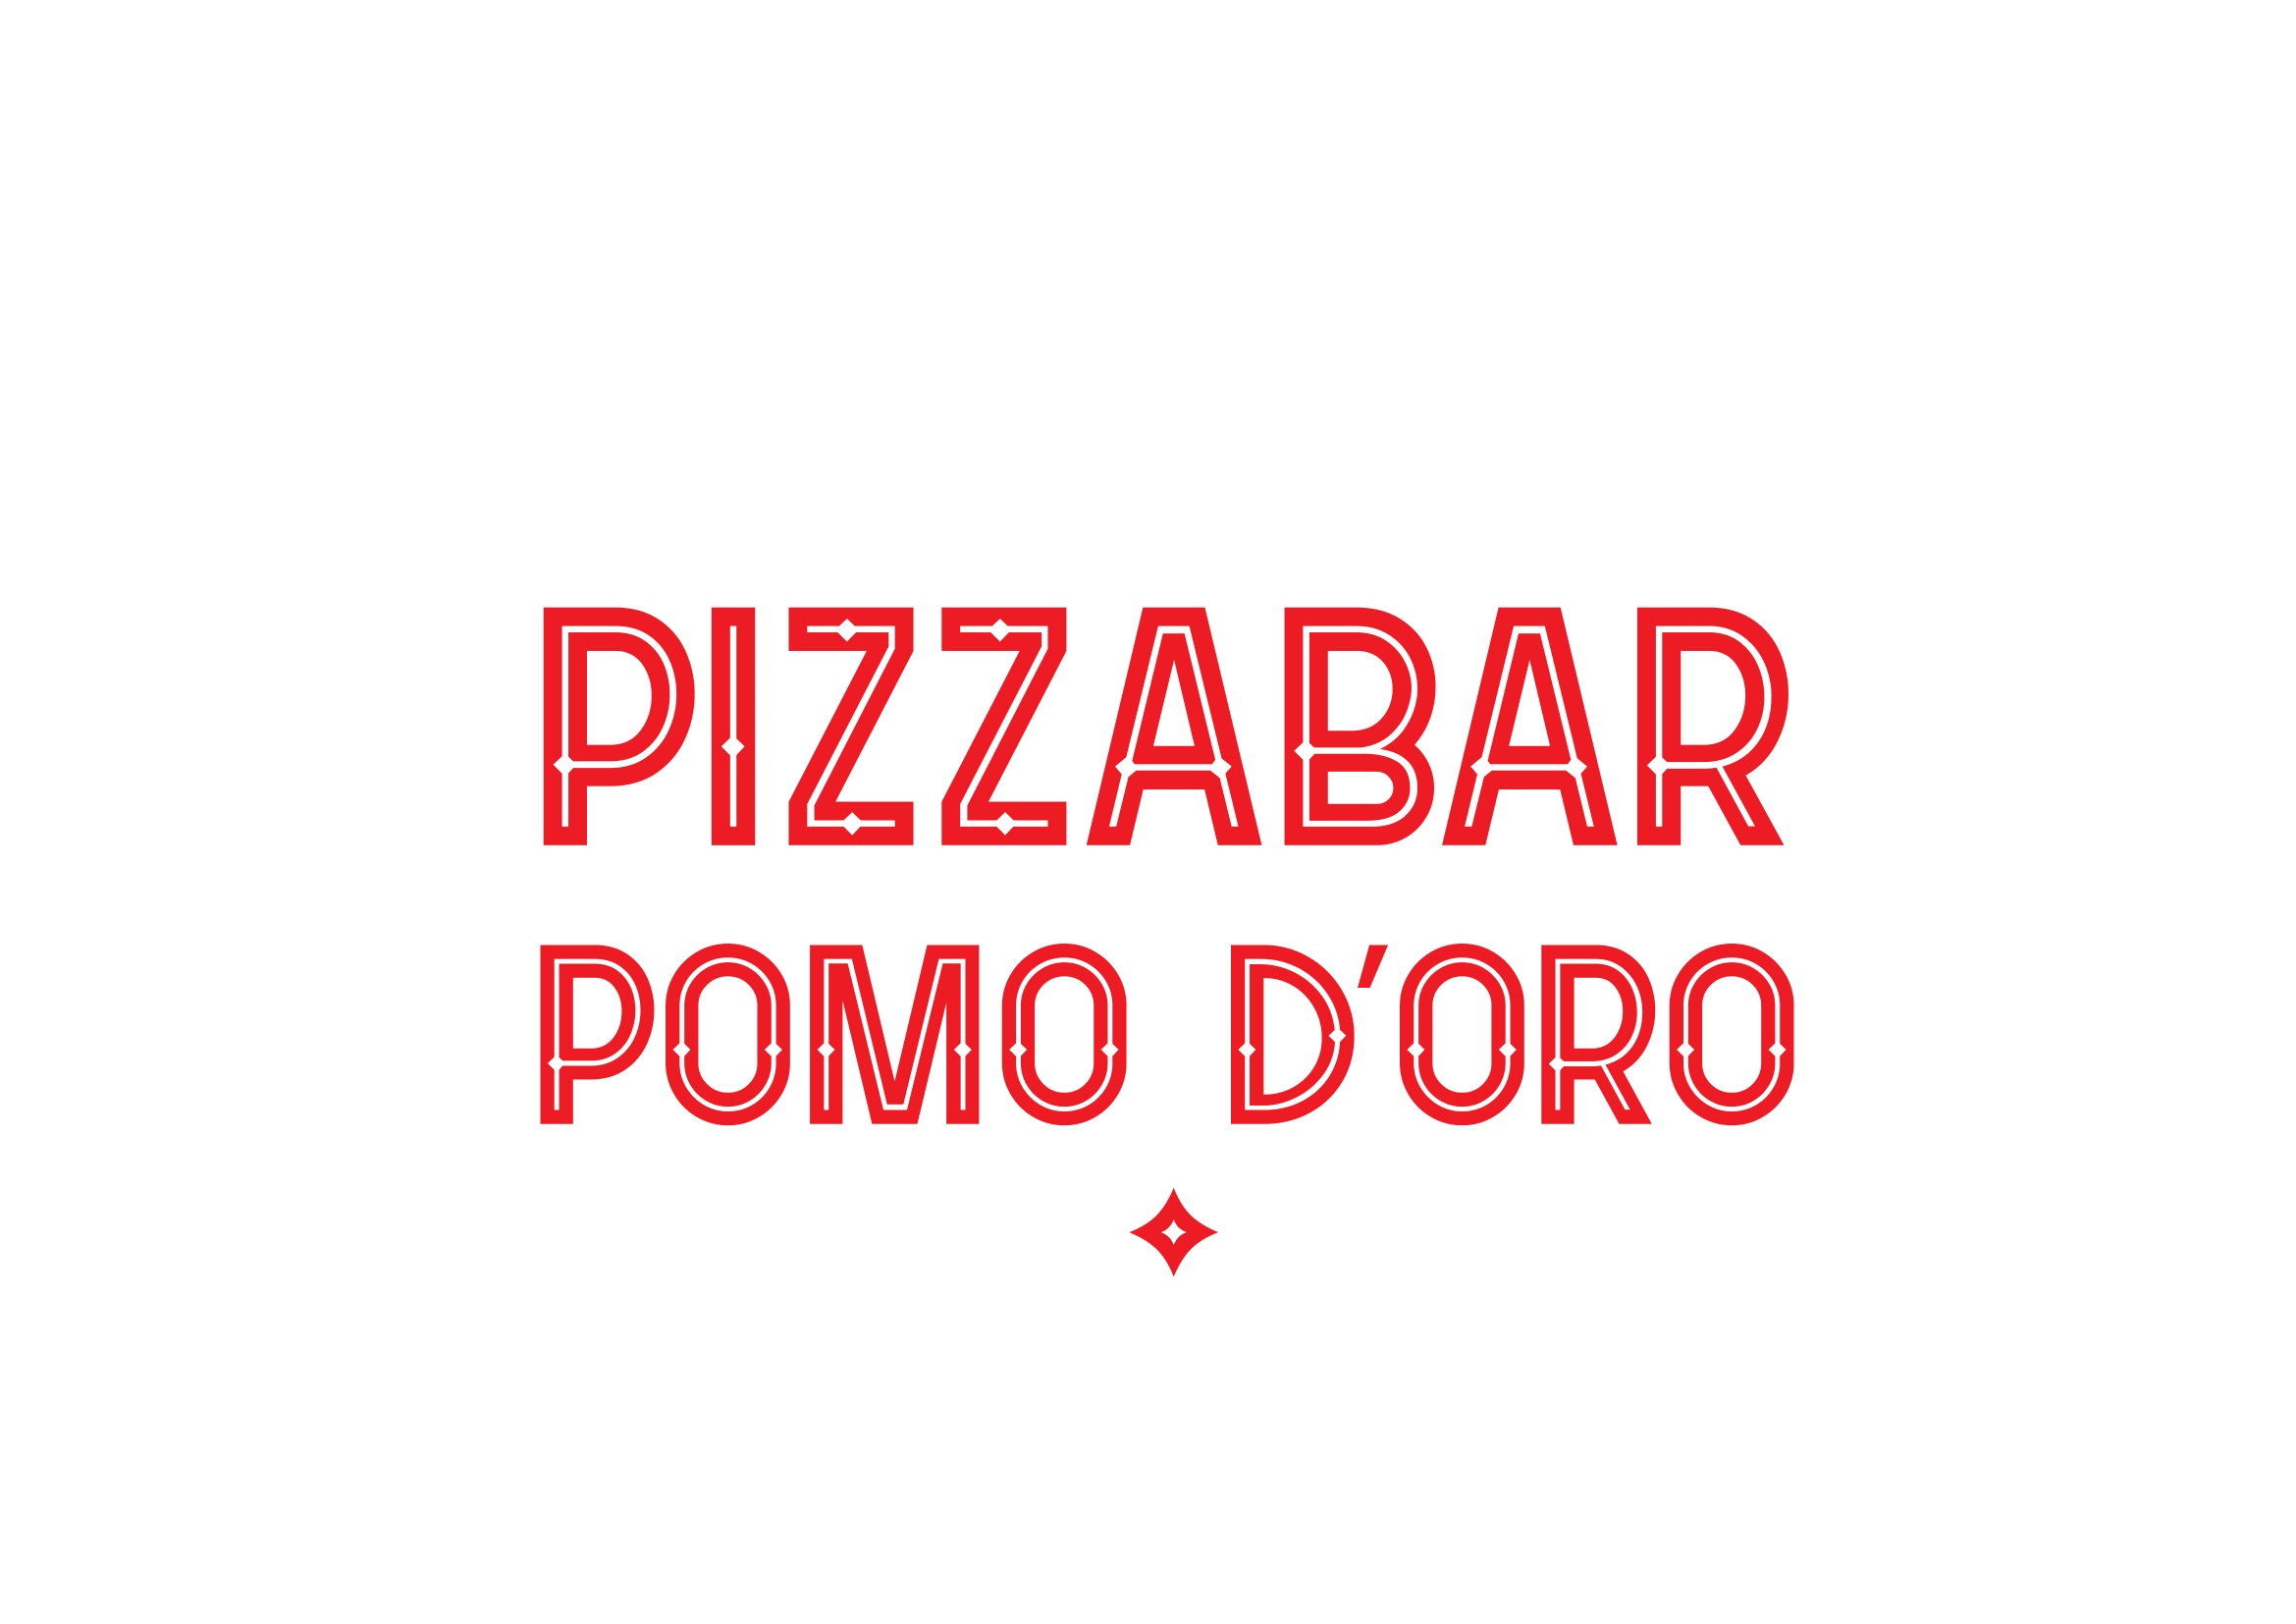 Pizzabar Pomodoro